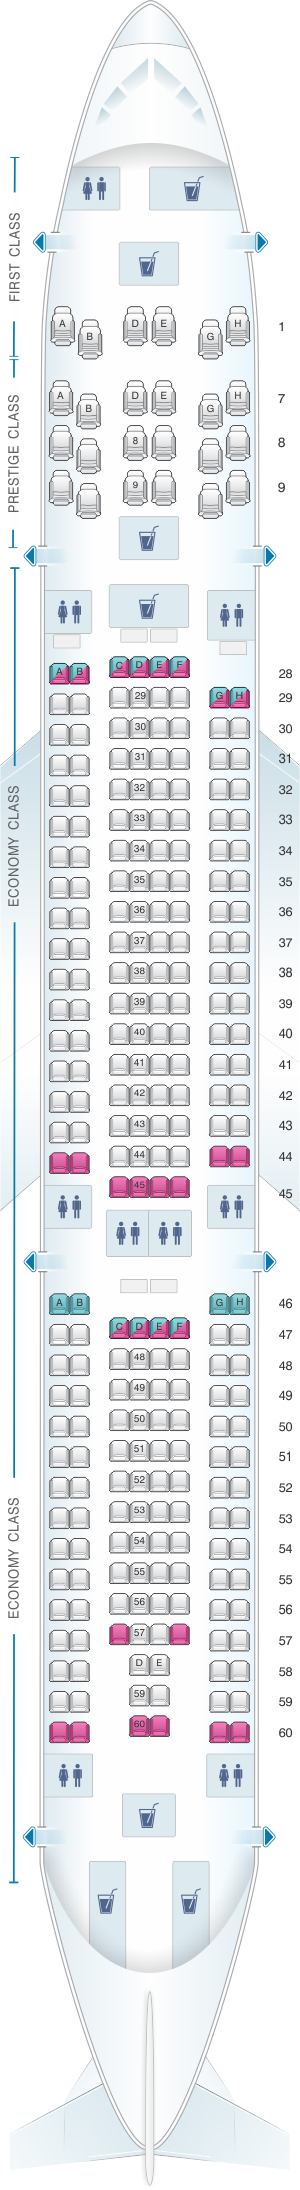 mapa de asientos korean air airbus a330 300 272pax plano del avión